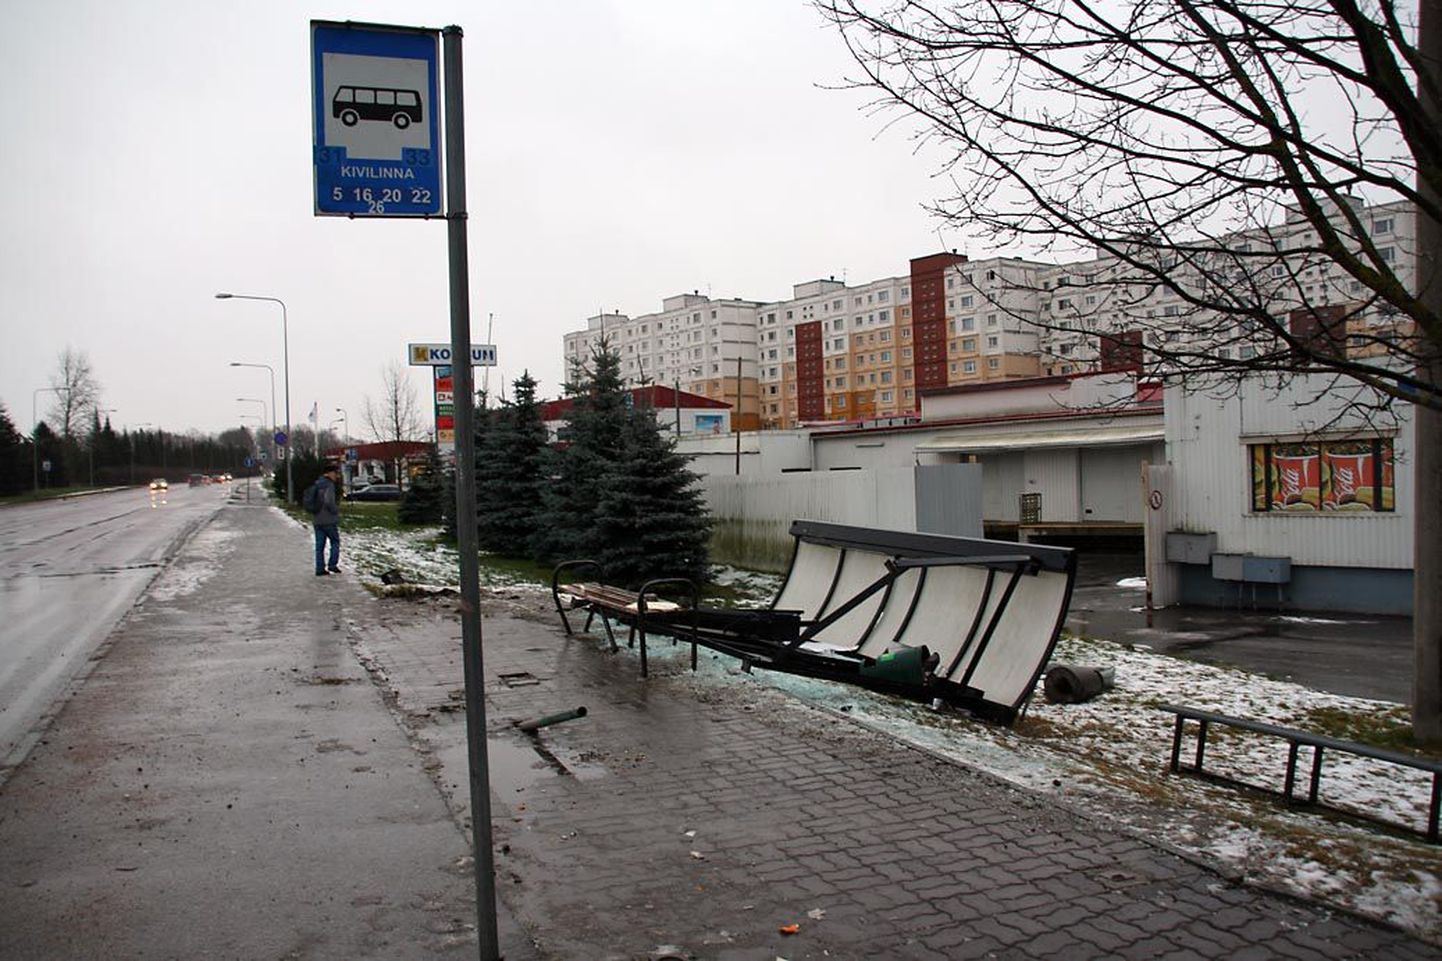 Sõiduauto purustas Tartus Jaama tänaval Kivilinna bussipeatuse ootepaviljoni. Varjualuse all viibisid õnnetuse hetkel ka inimesed, kes said vigastada.